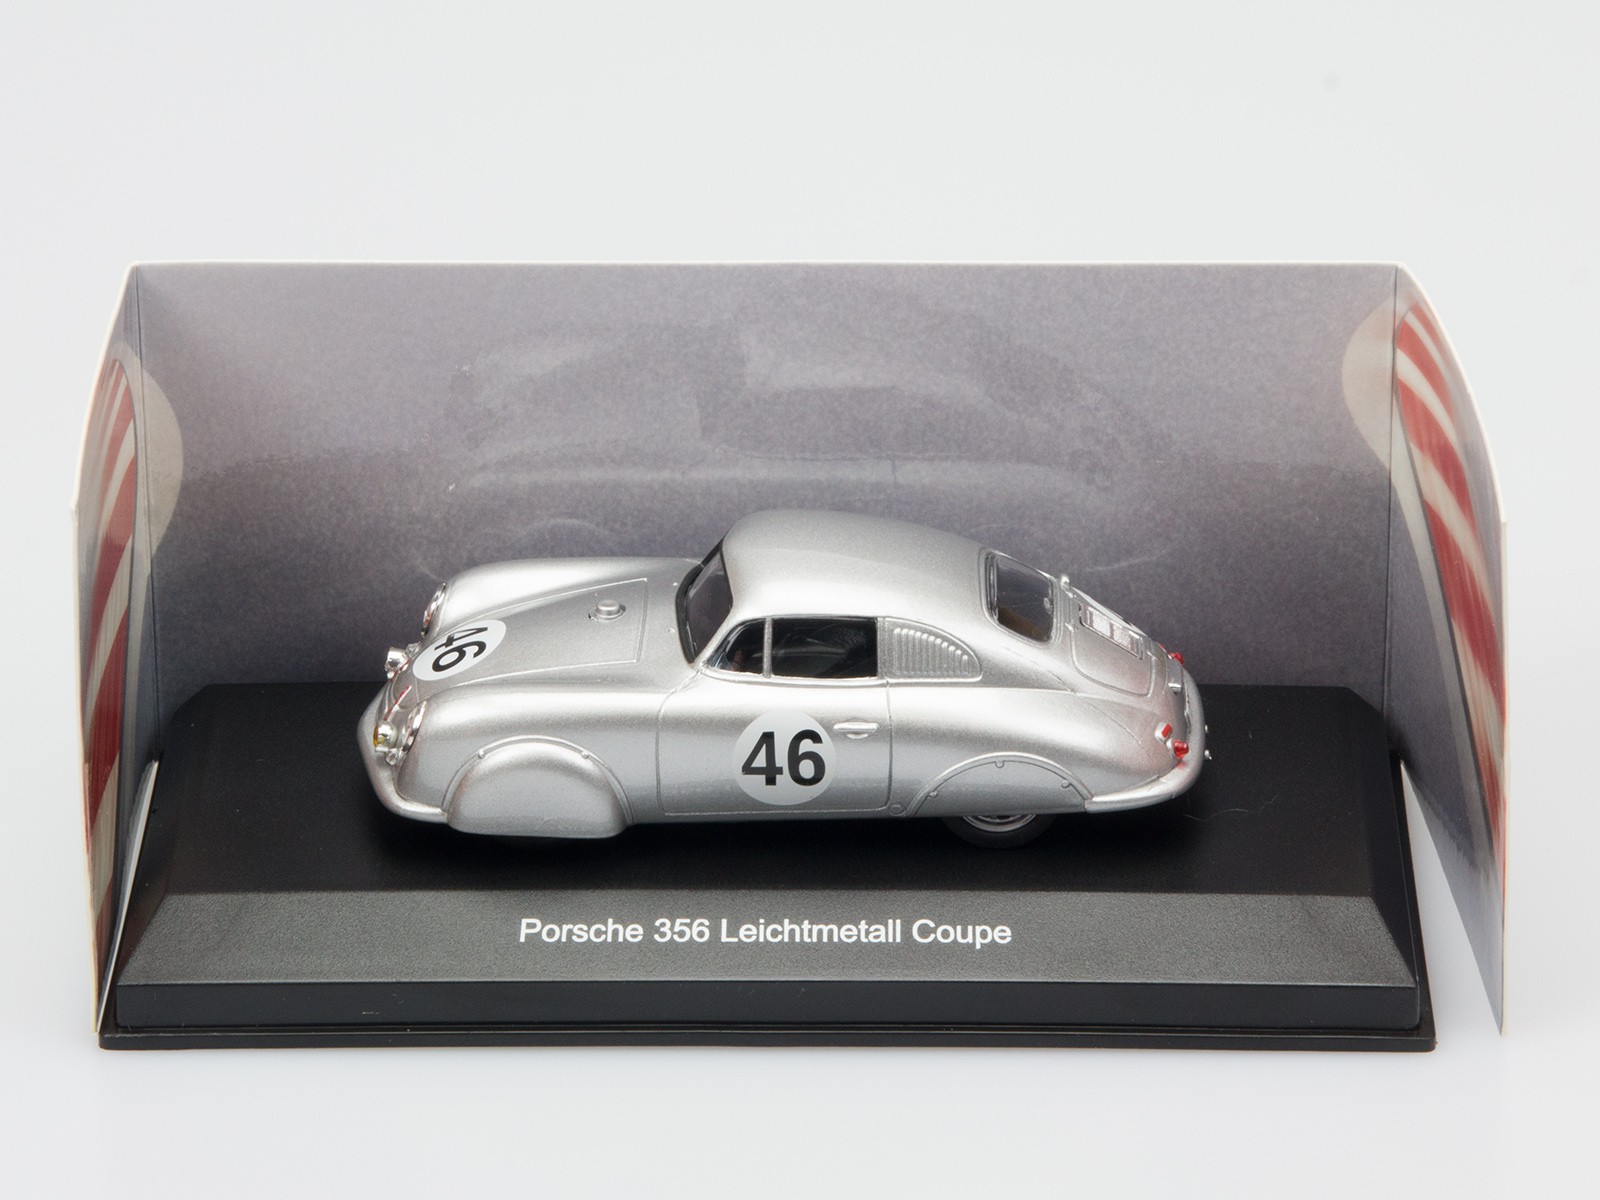 Dingler Legenden 015590 Porsche 356 Leichtmetallcoupe 1:43